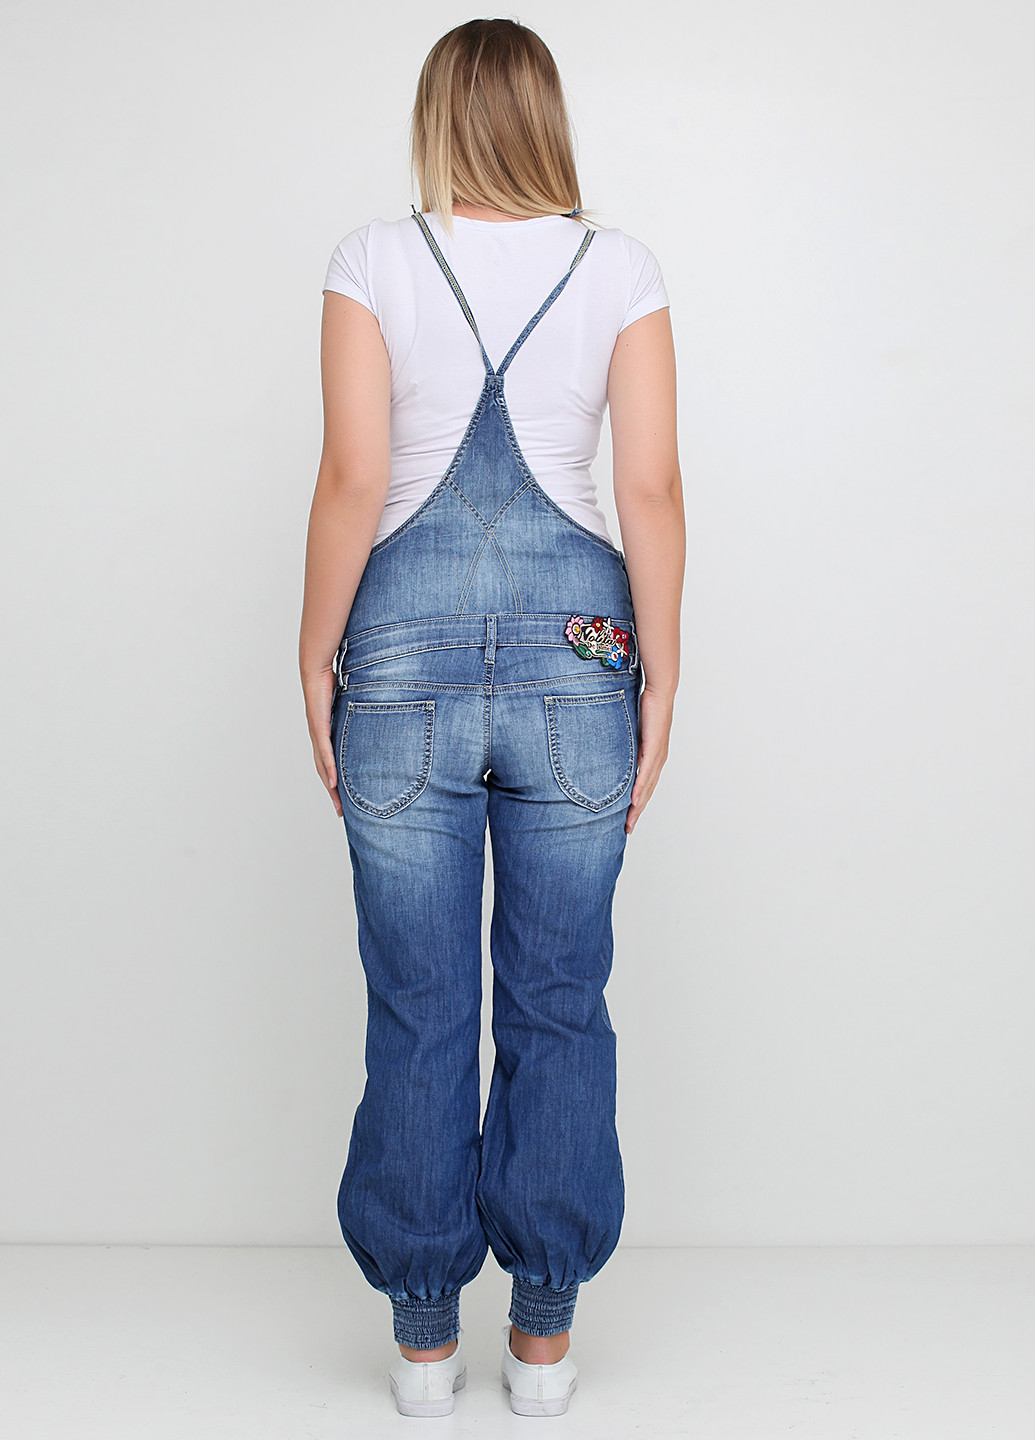 Комбінезон Nolita комбінезон-брюки однотонний синій джинсовий